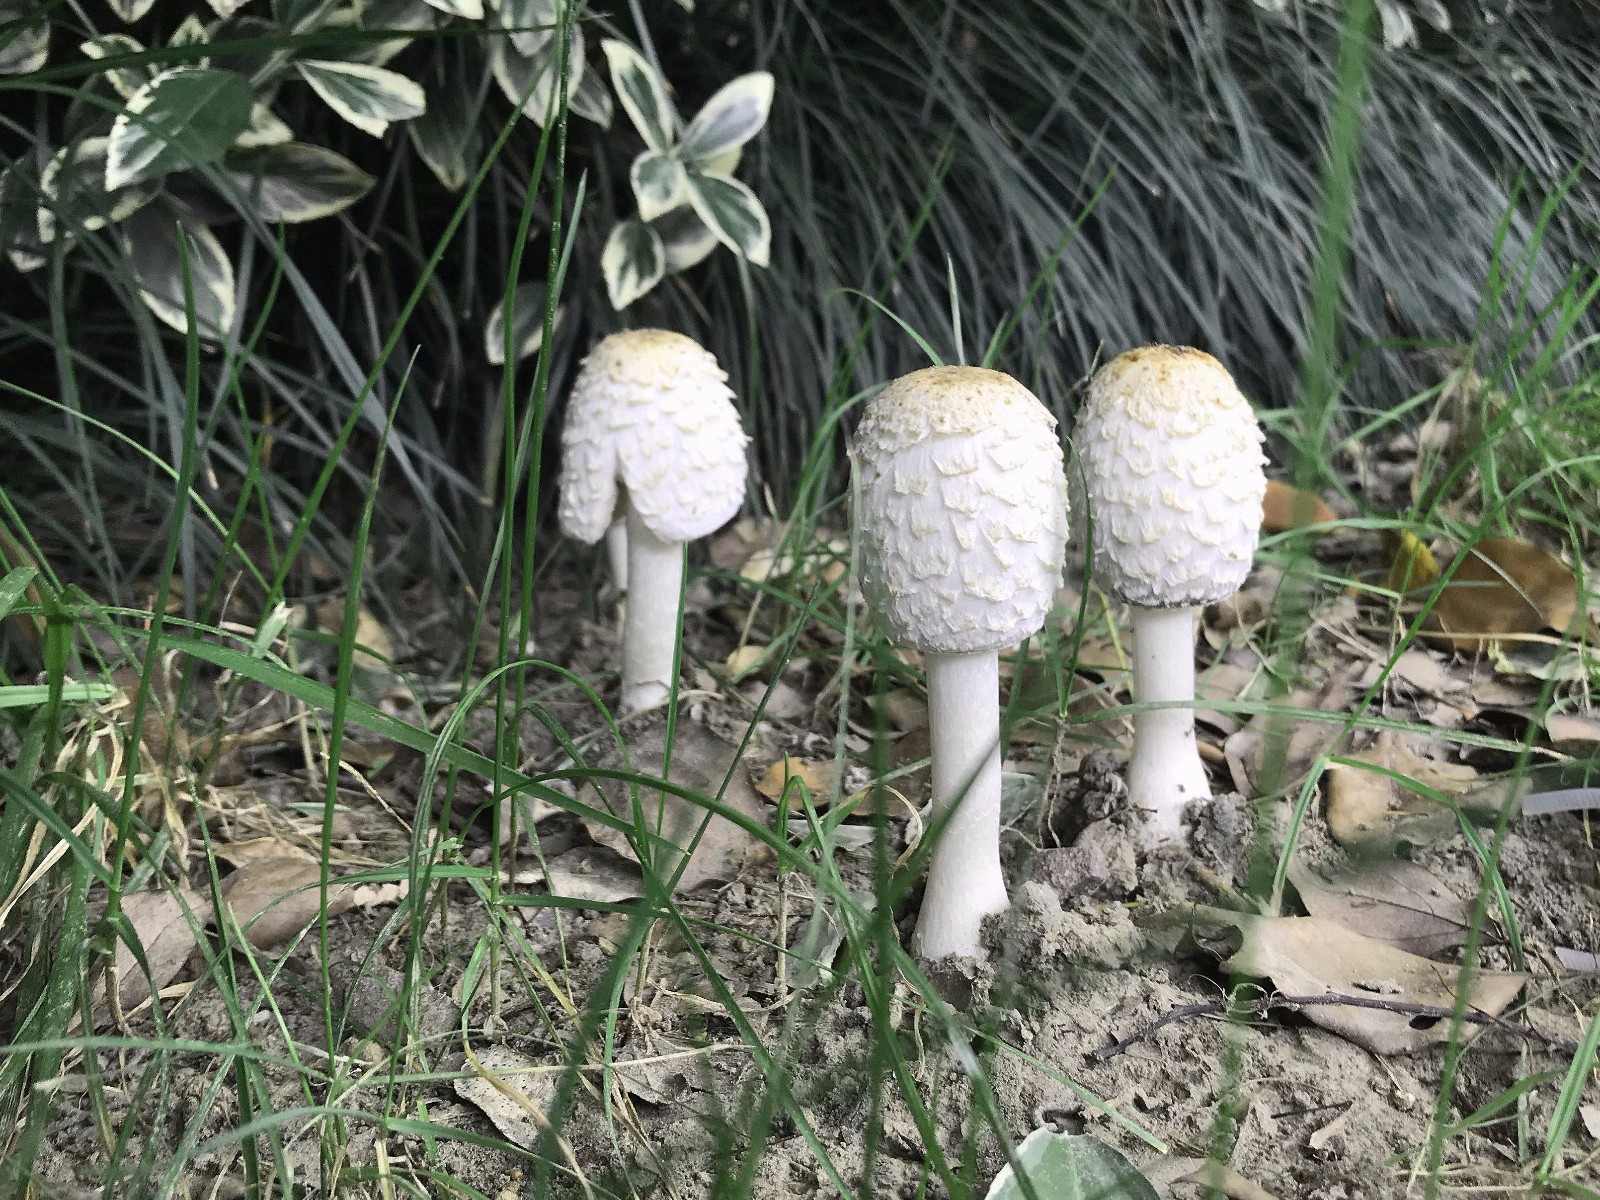 野外的野蘑菇不懂的不可轻食 是否有毒 - 图看 - 大河图易学